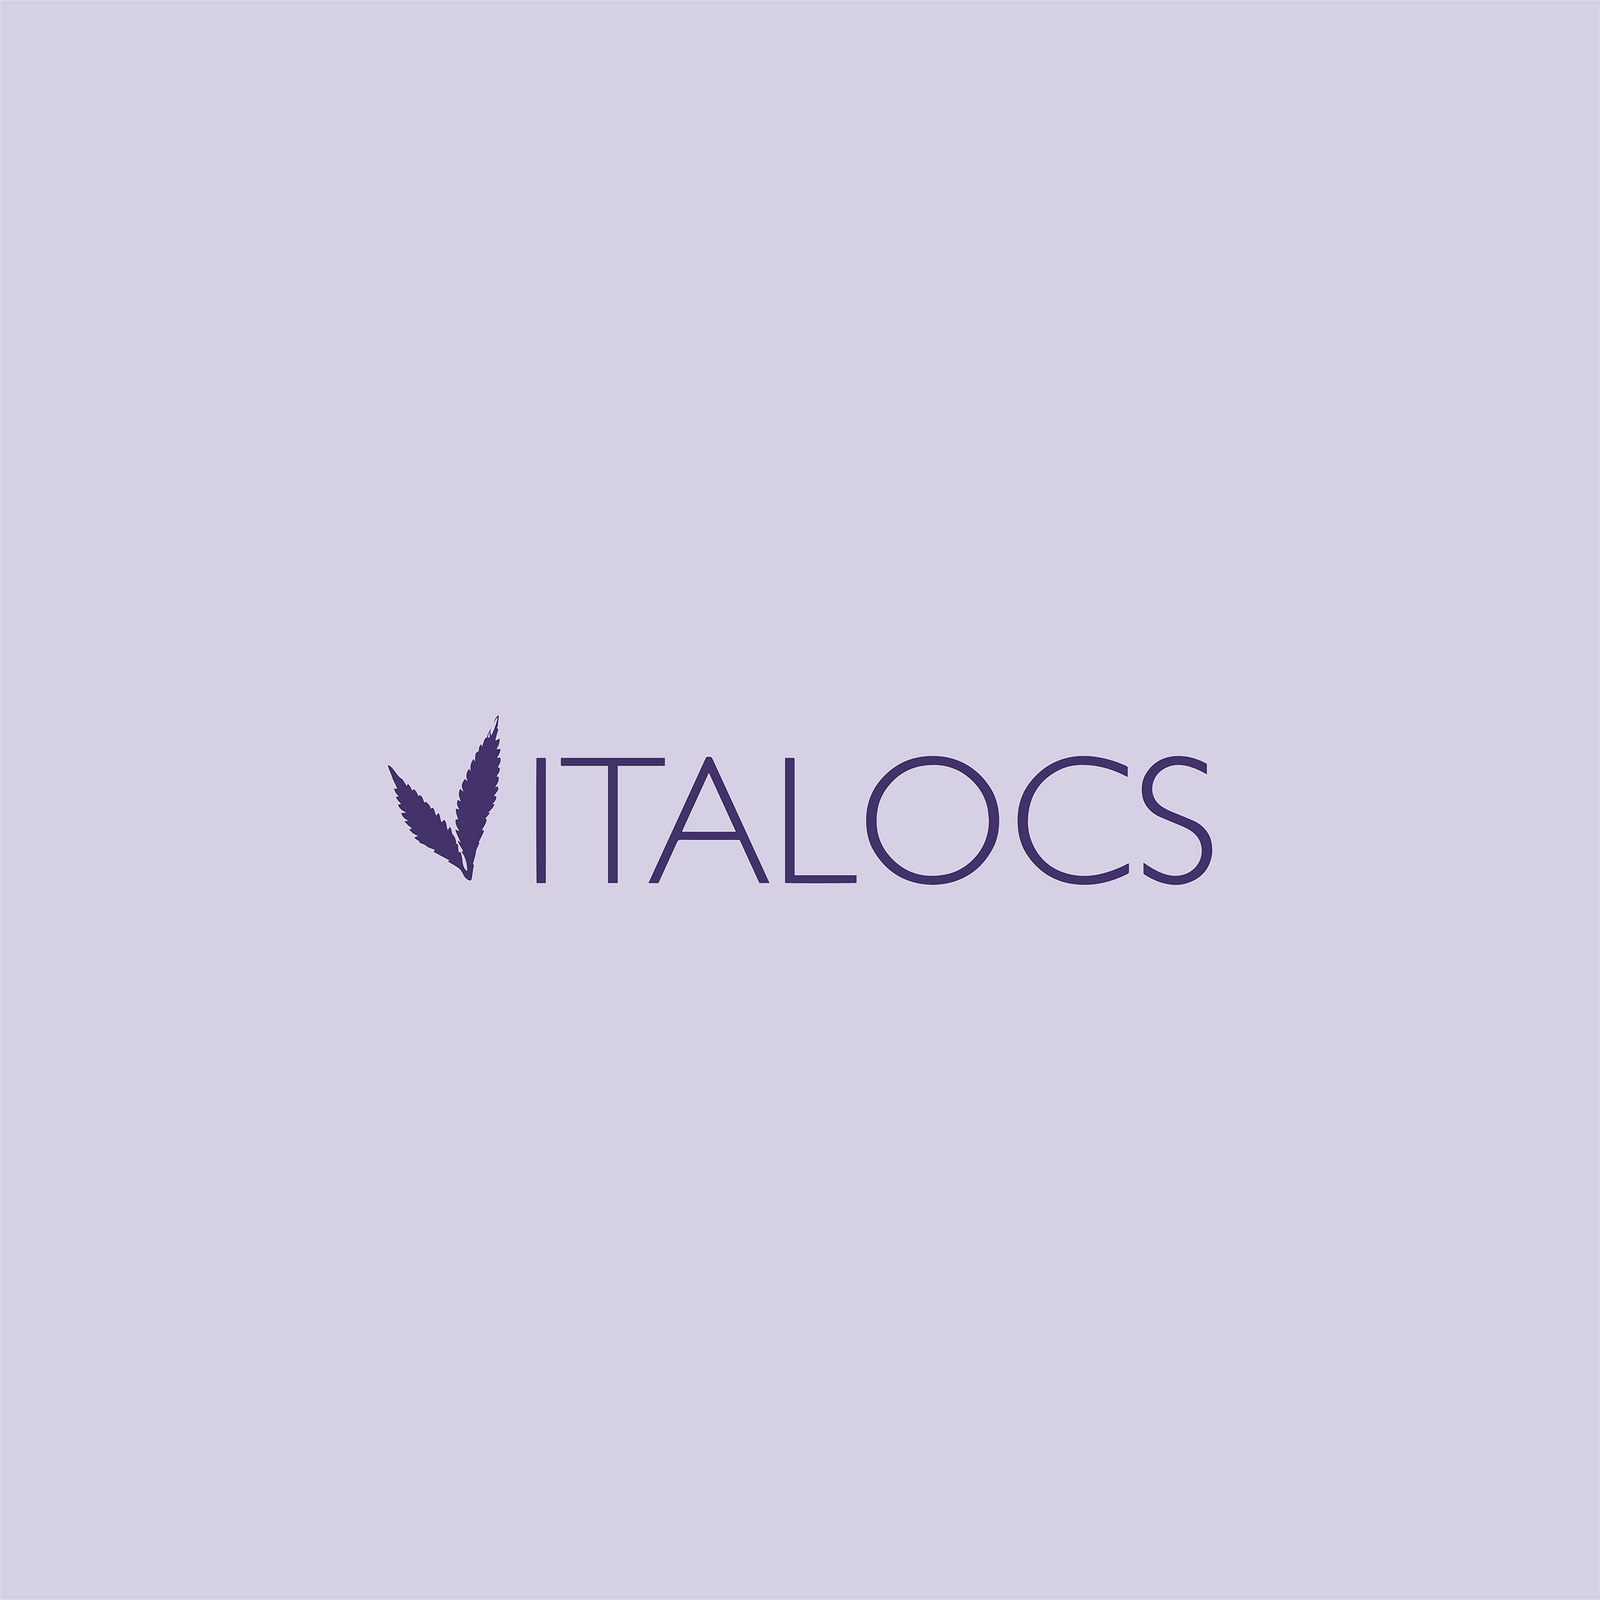 Vitalocs